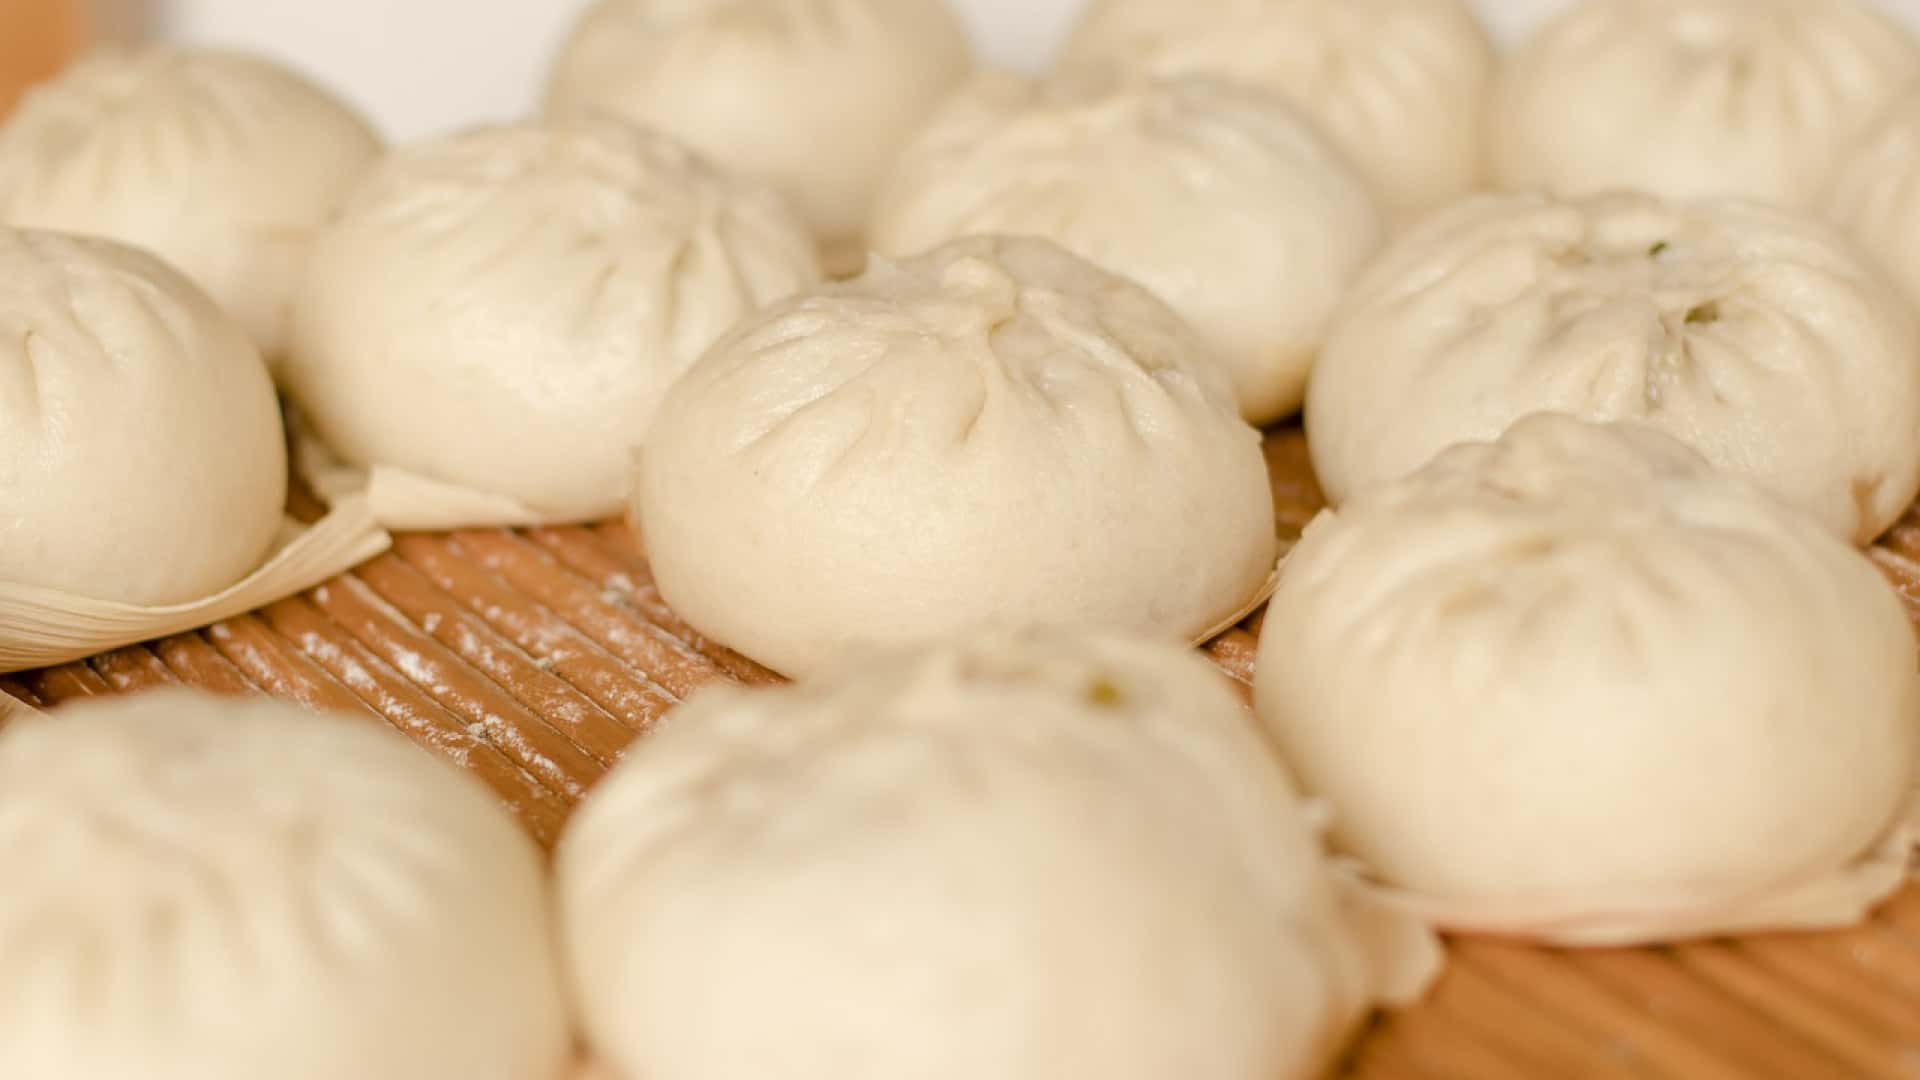 Dumplings cuits à la vapeur disposés sur une surface en bambou, favorisant les bienfaits sur la santé digestive grâce aux ferments lactiques.